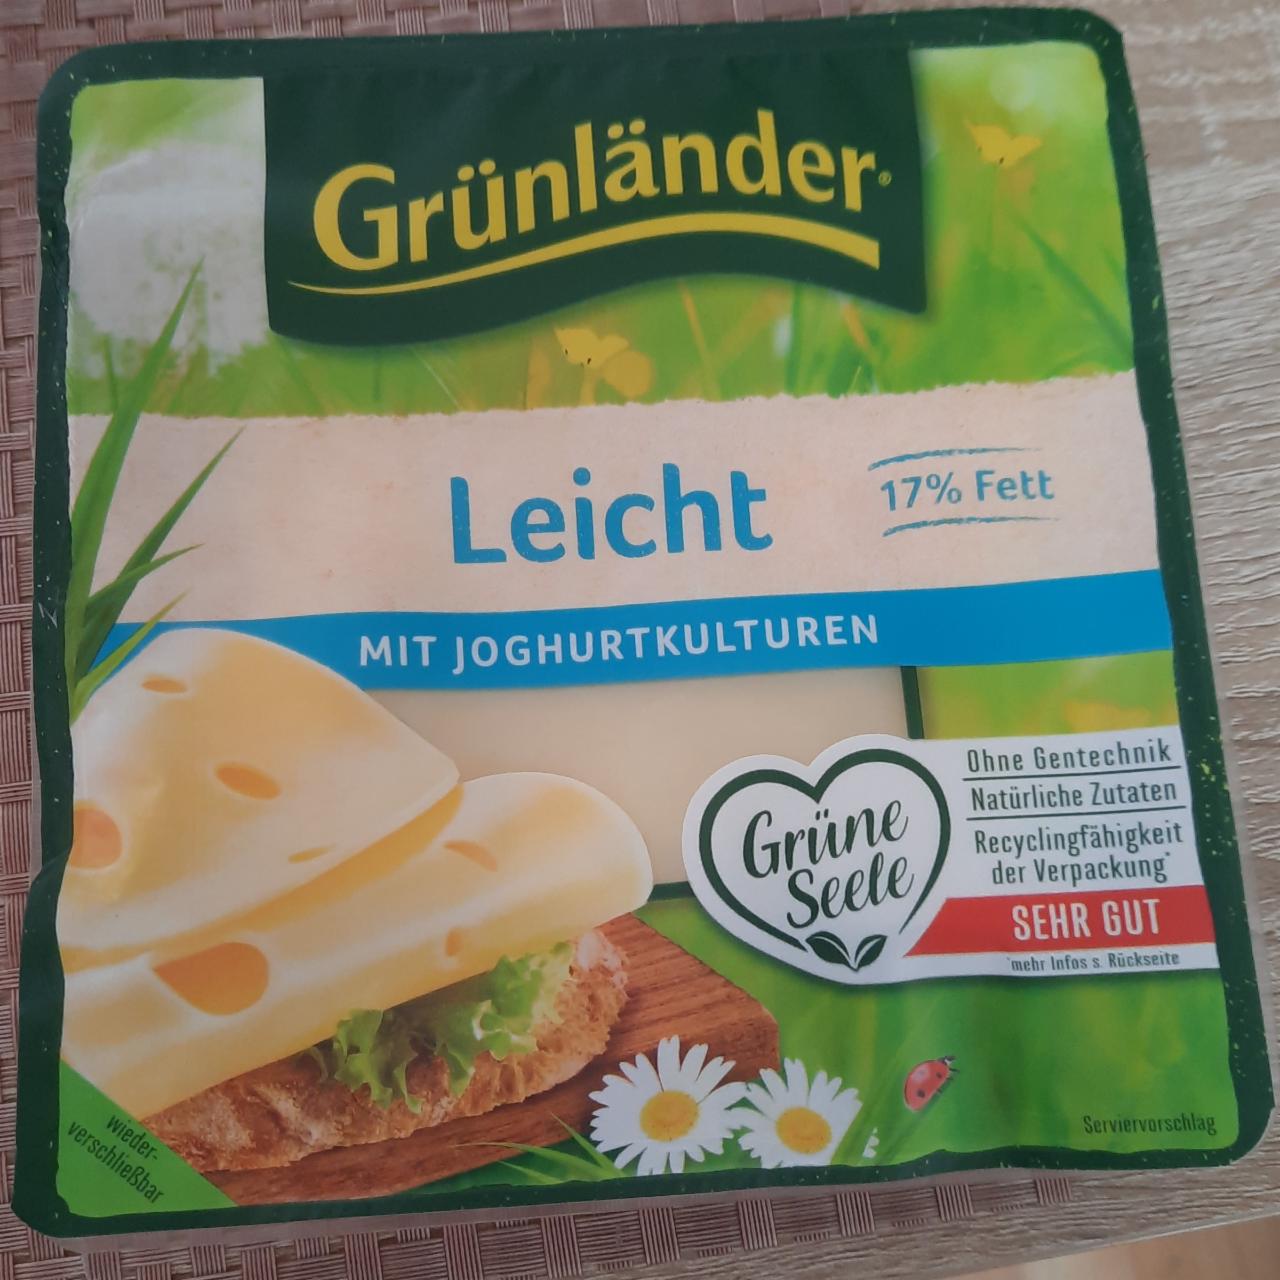 Фото - Käse Leicht 17% Grünländer